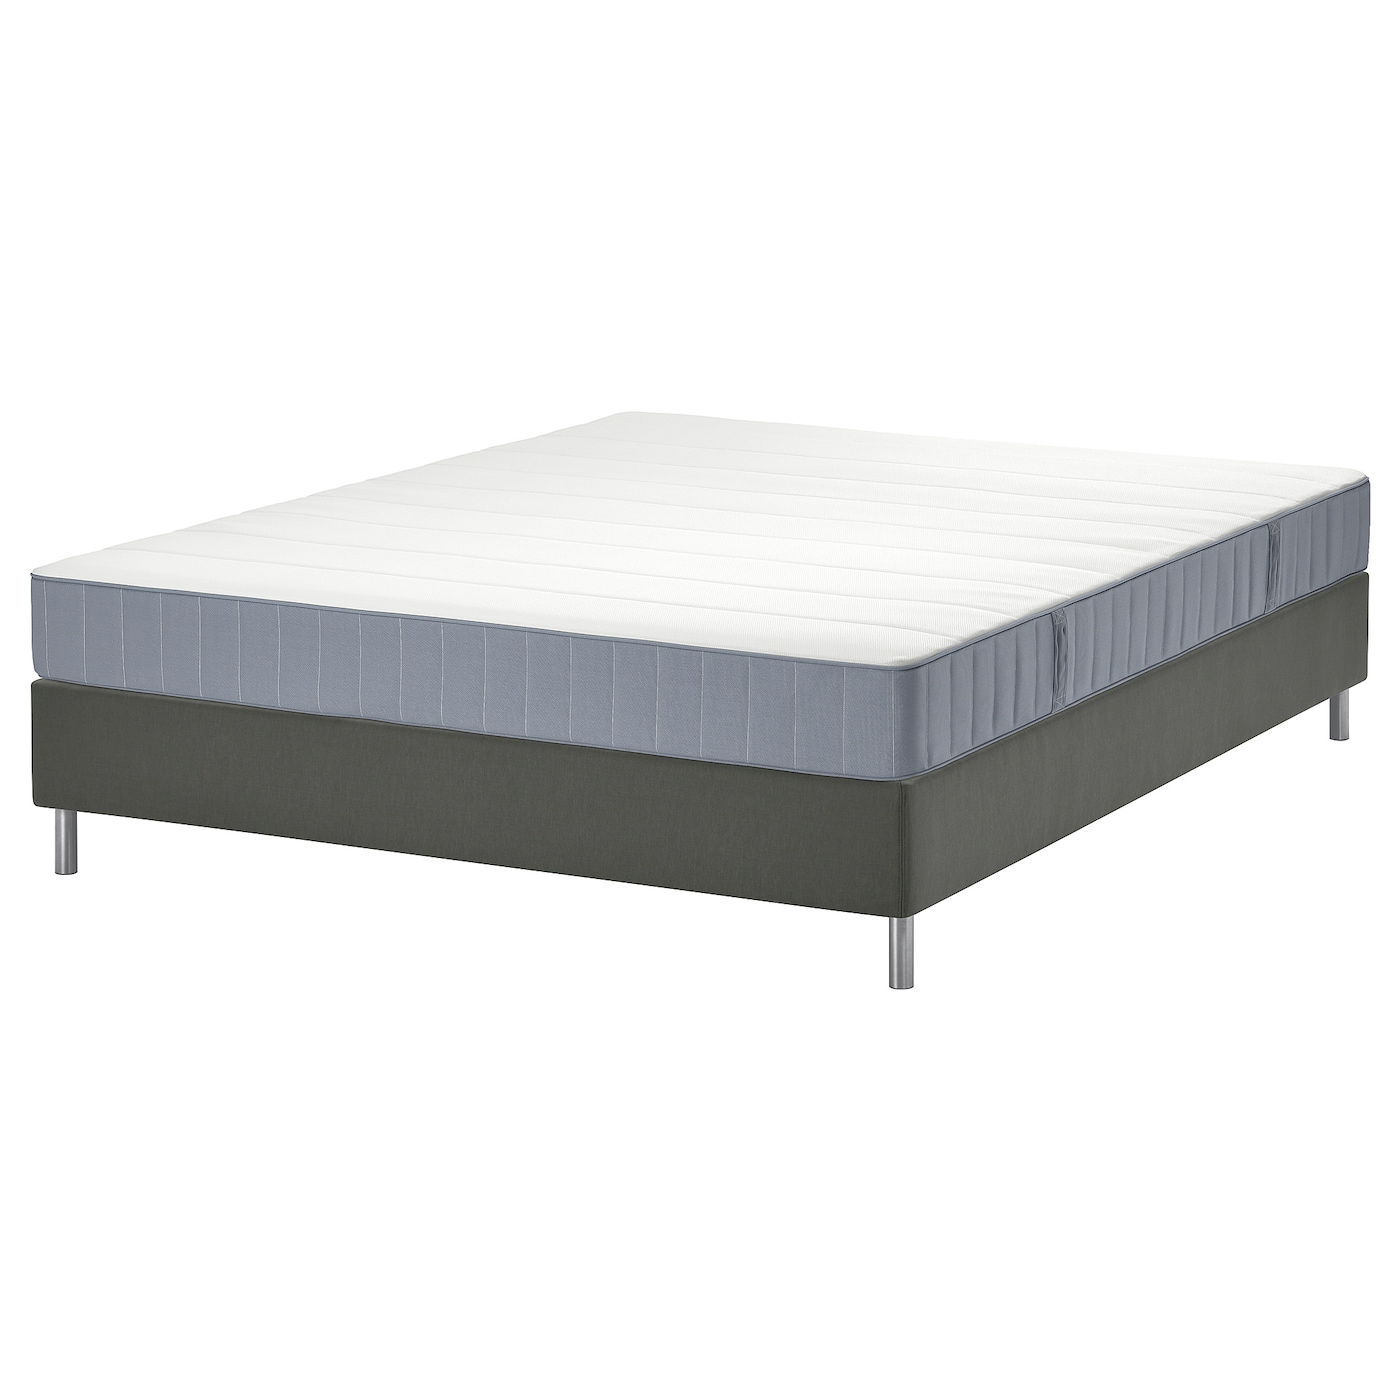 Кровать - LYNGÖR / LYNGОR IKEA/ ЛЮНГЕРЬ ИКЕА,  200х160 см, серый